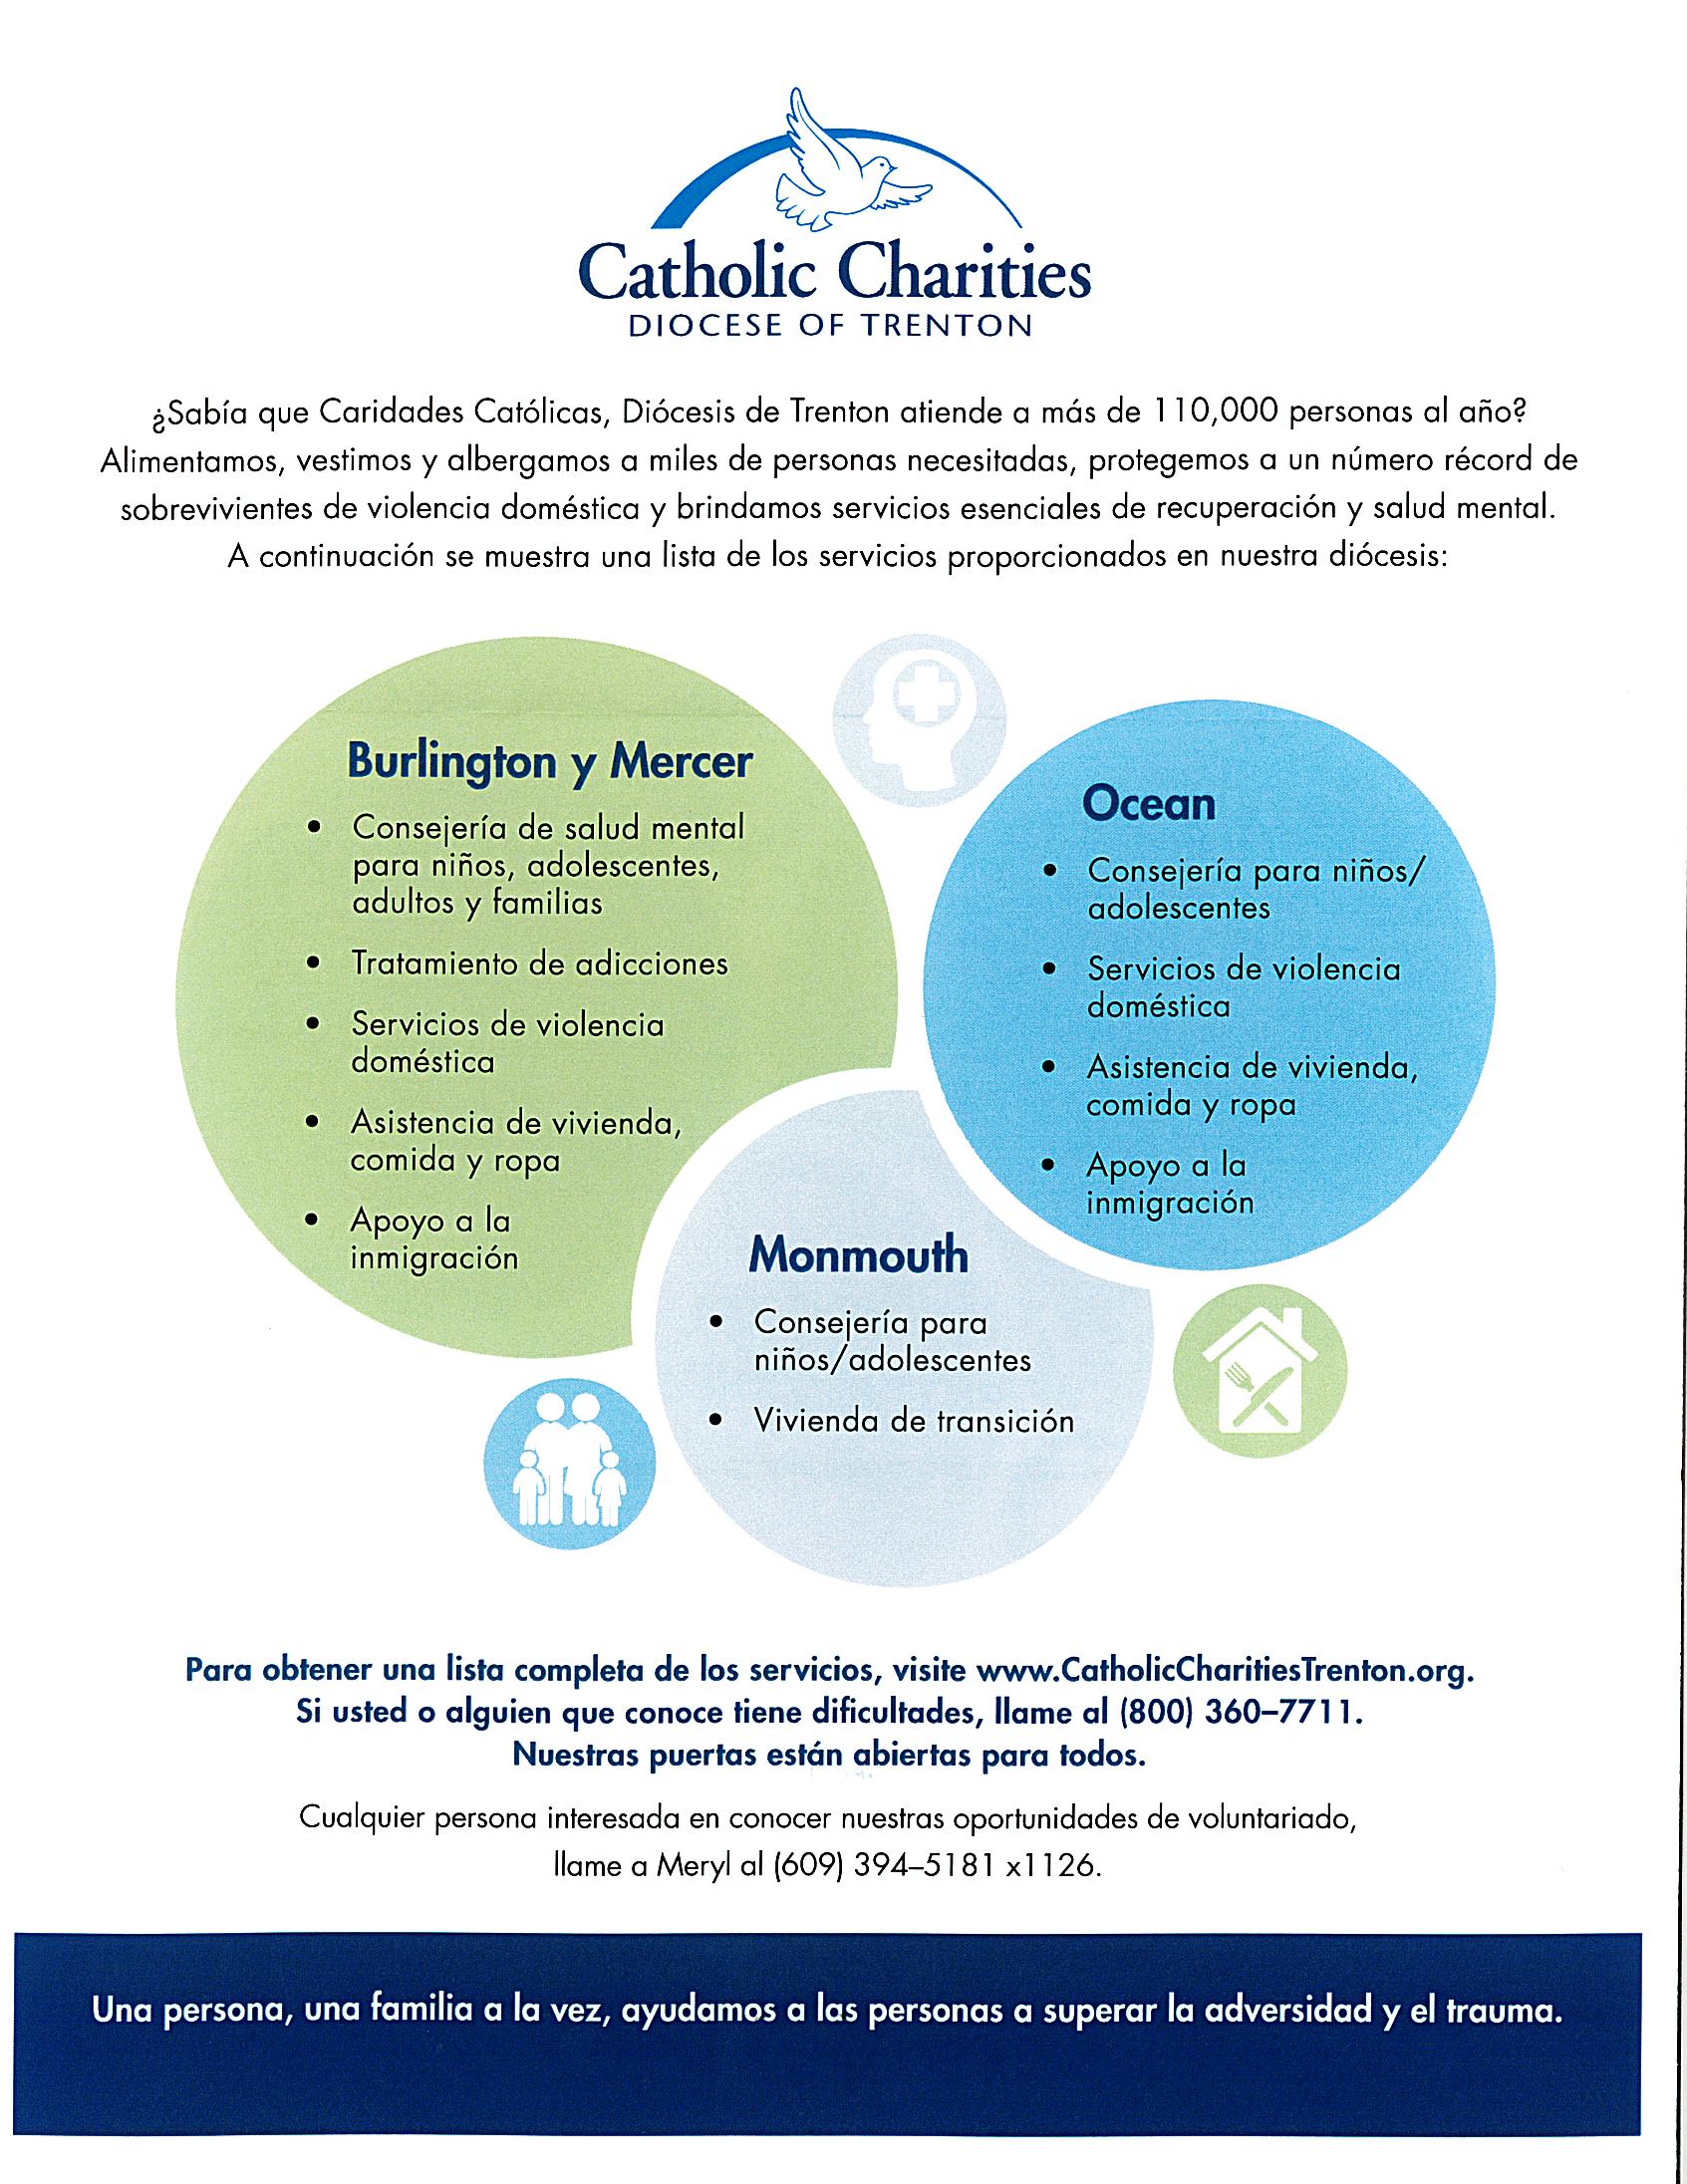 Catholic Charities helps Span